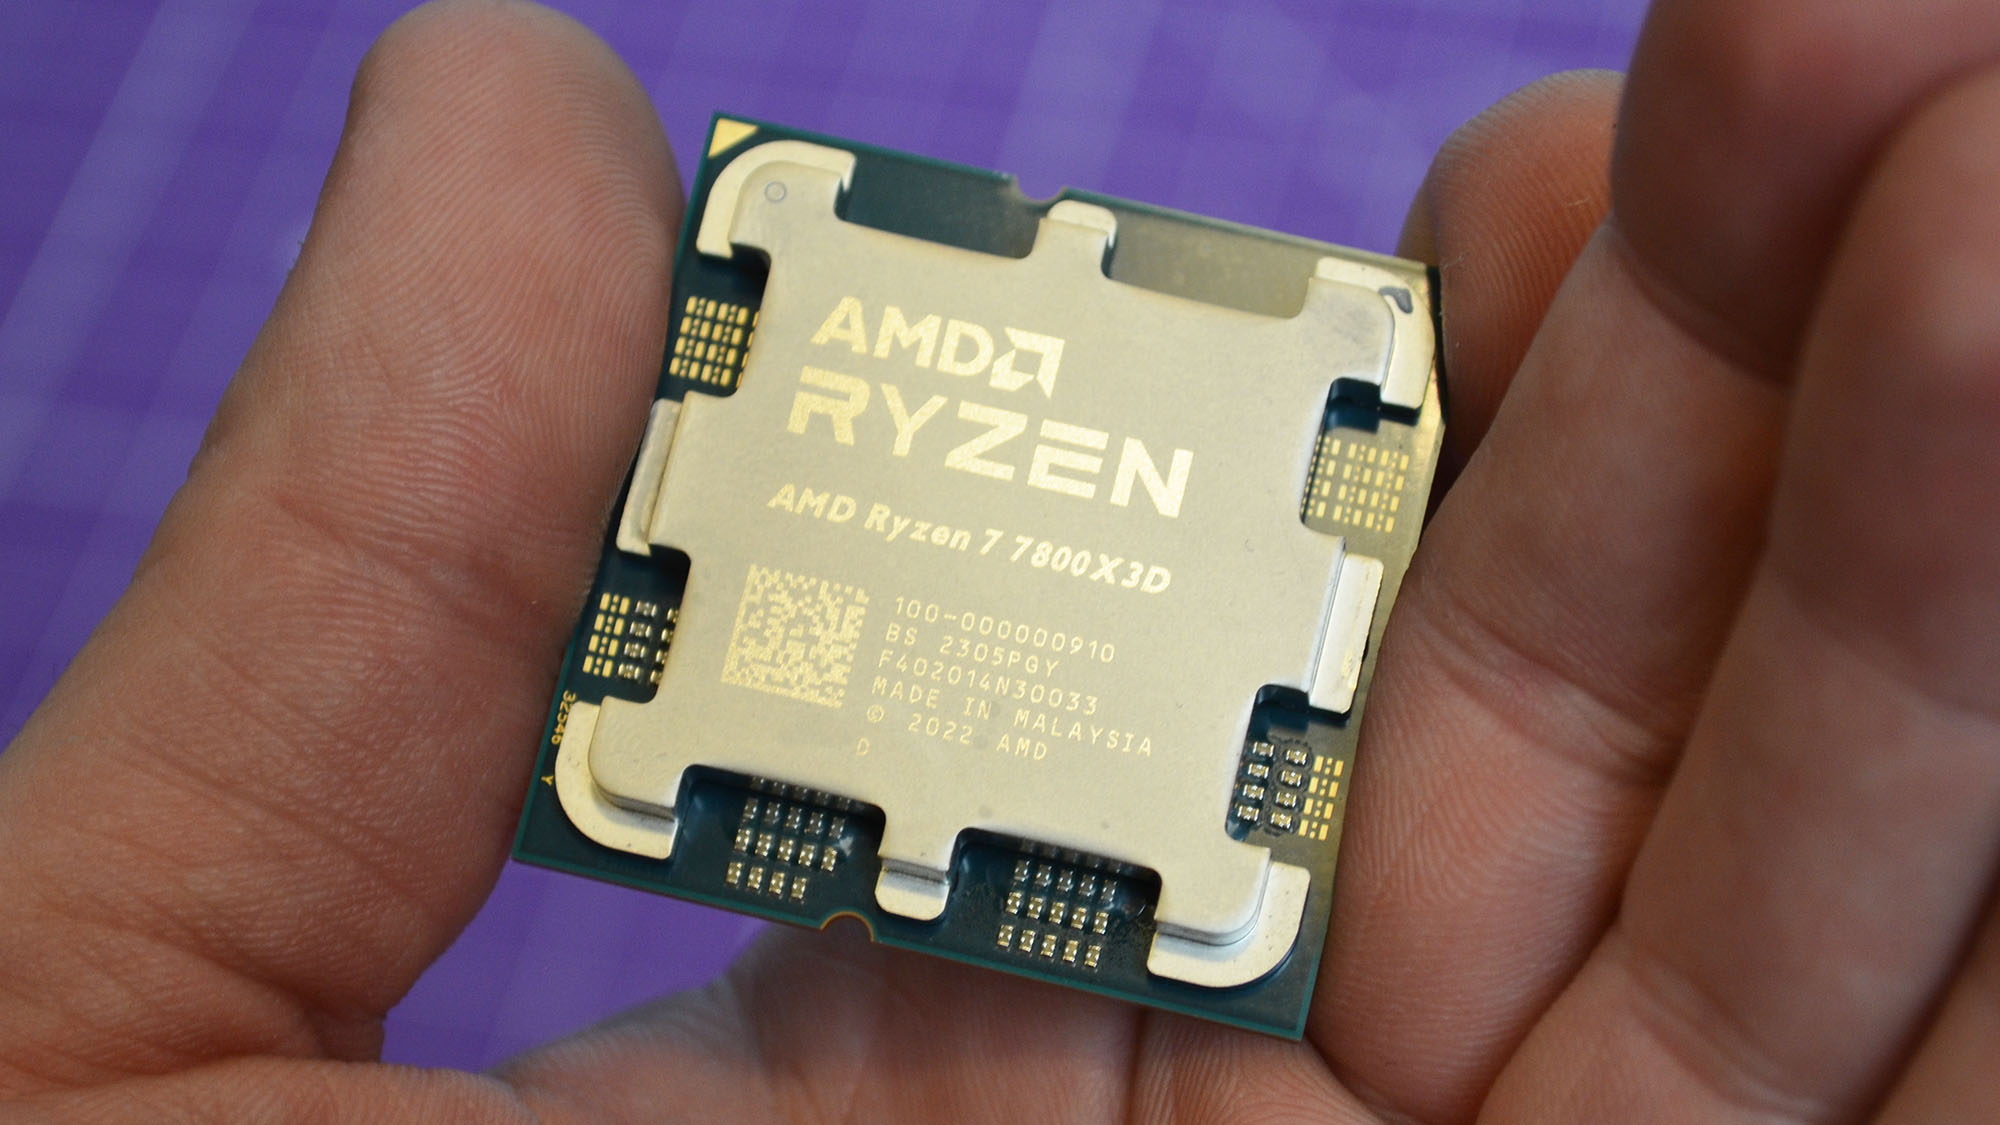 An AMD Ryzen 7 7800X3D in a man's hand